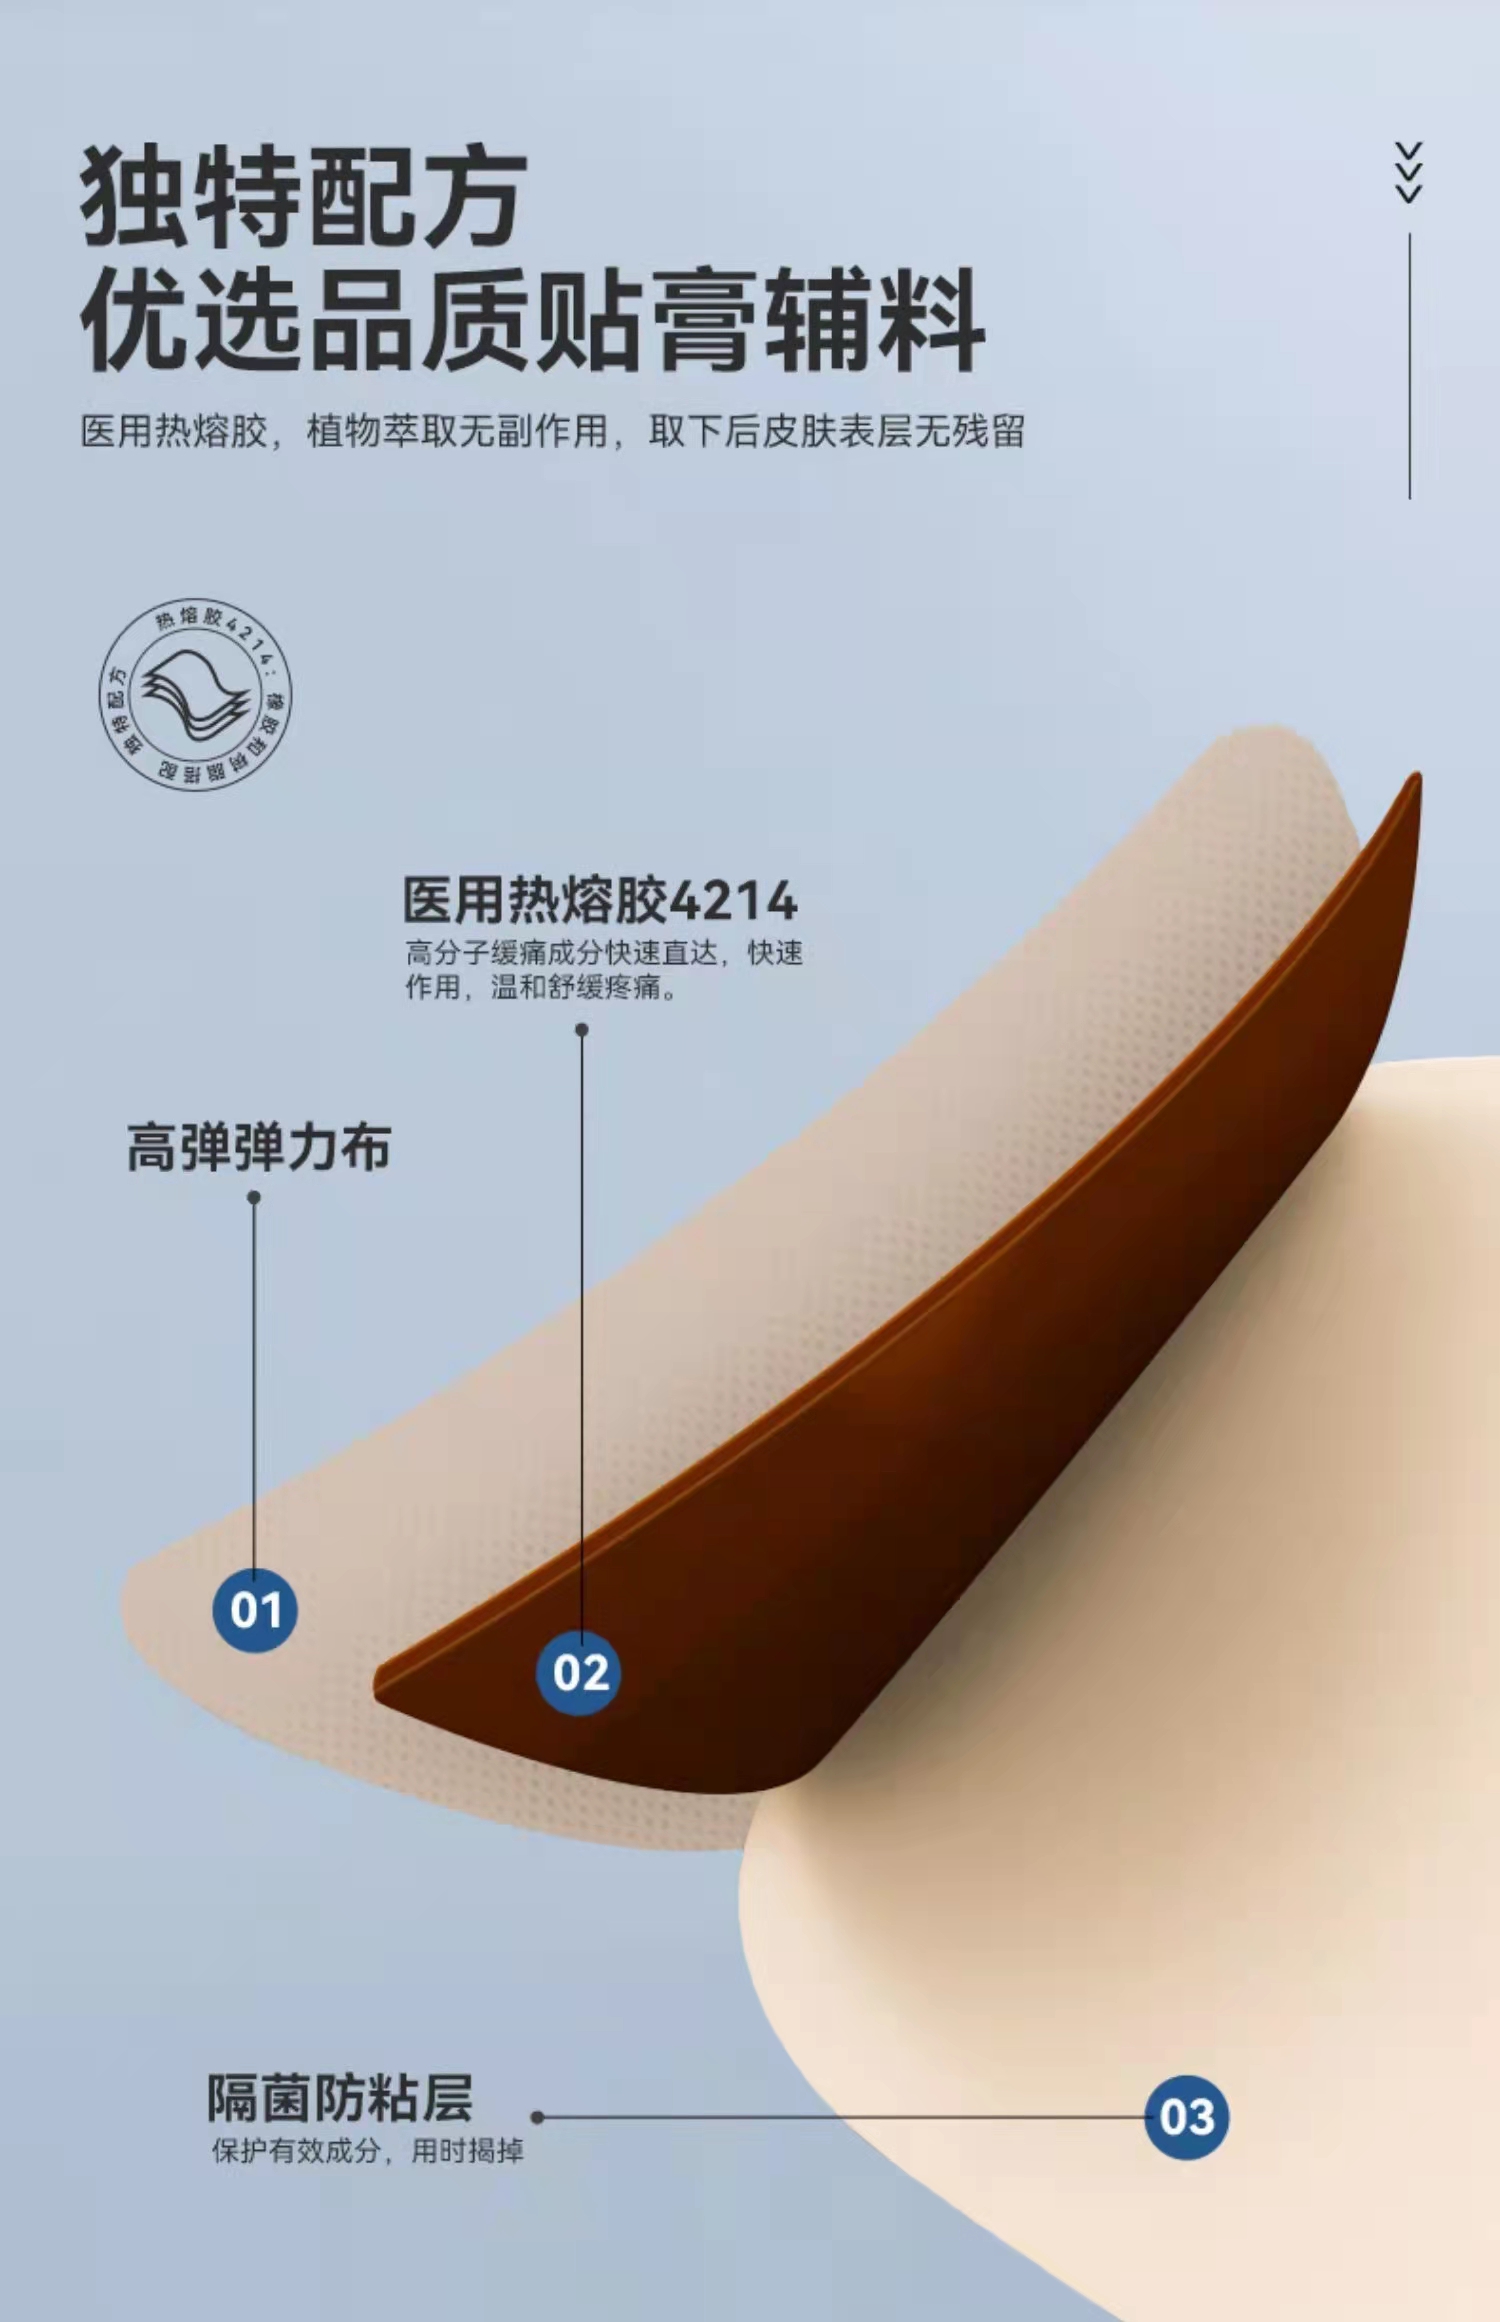 中国贴膏剂专家 打造强势品牌秦鲁筋骨123